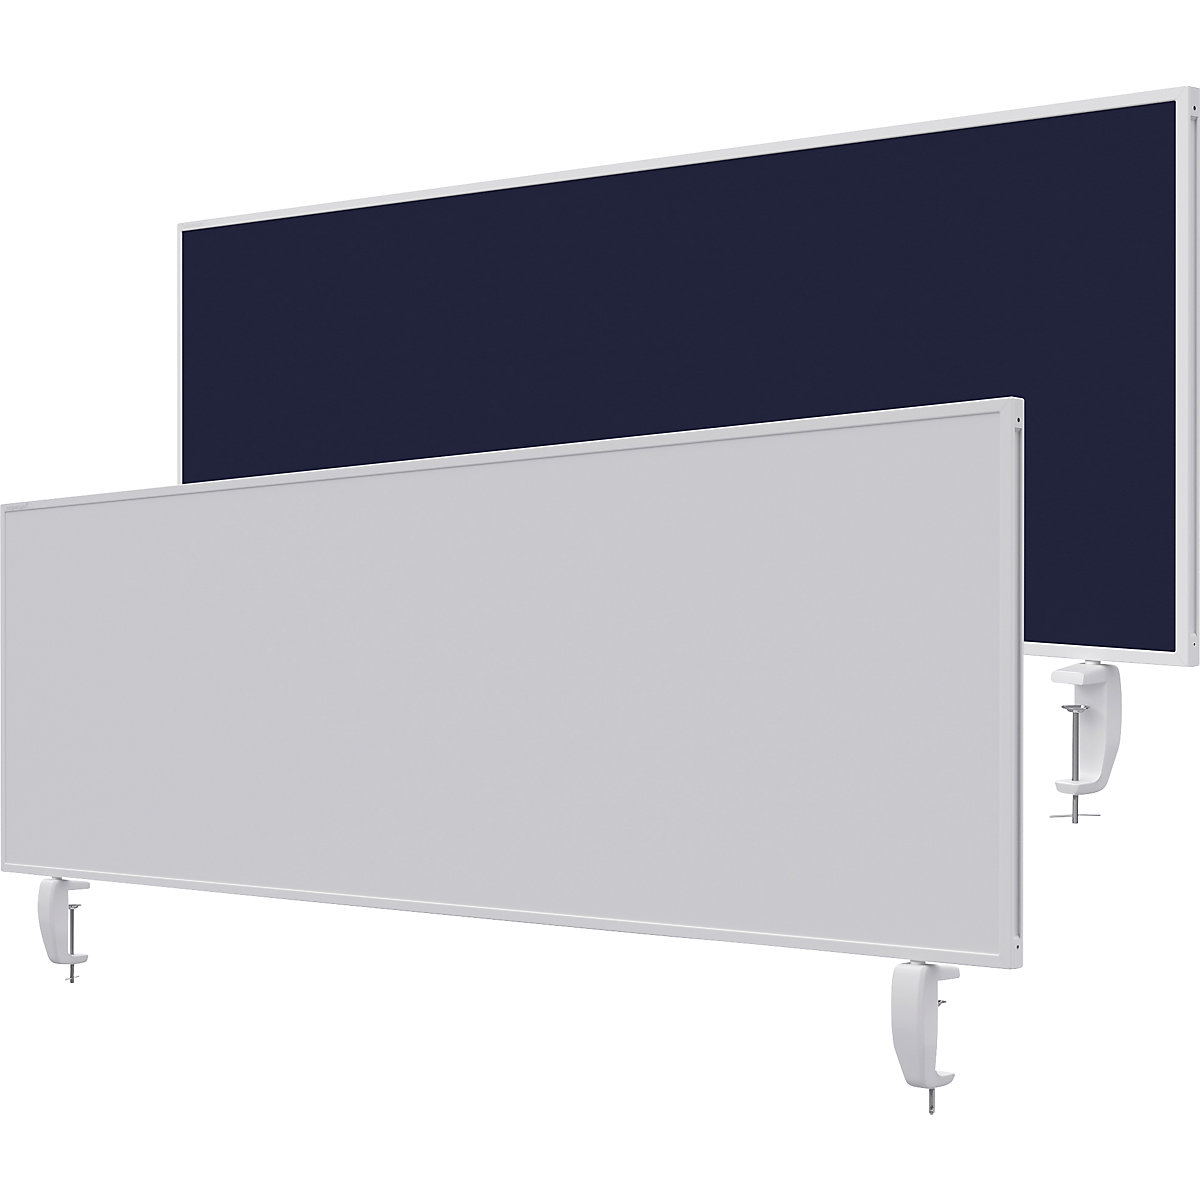 Namizna predelna stena VarioPin – magnetoplan, bela tabla/klobučevina, širina 1600 mm, temno modre barve